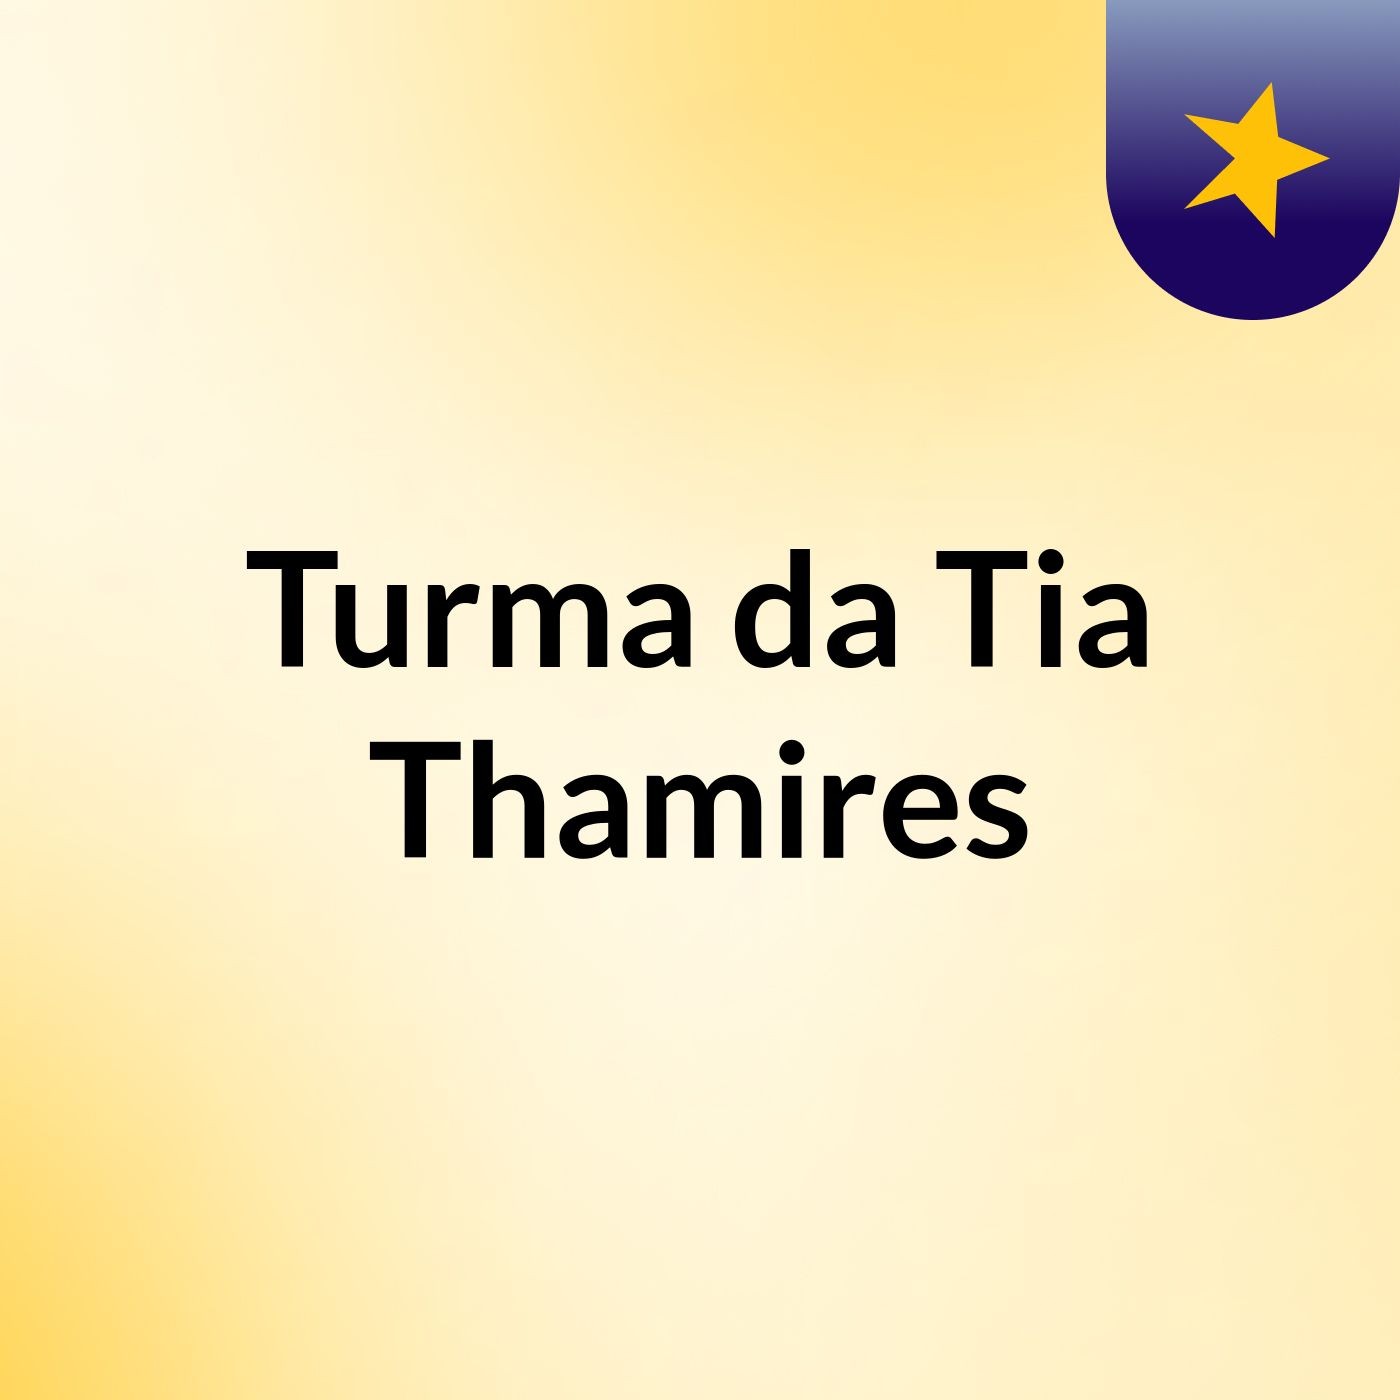 Turma da Tia Thamires